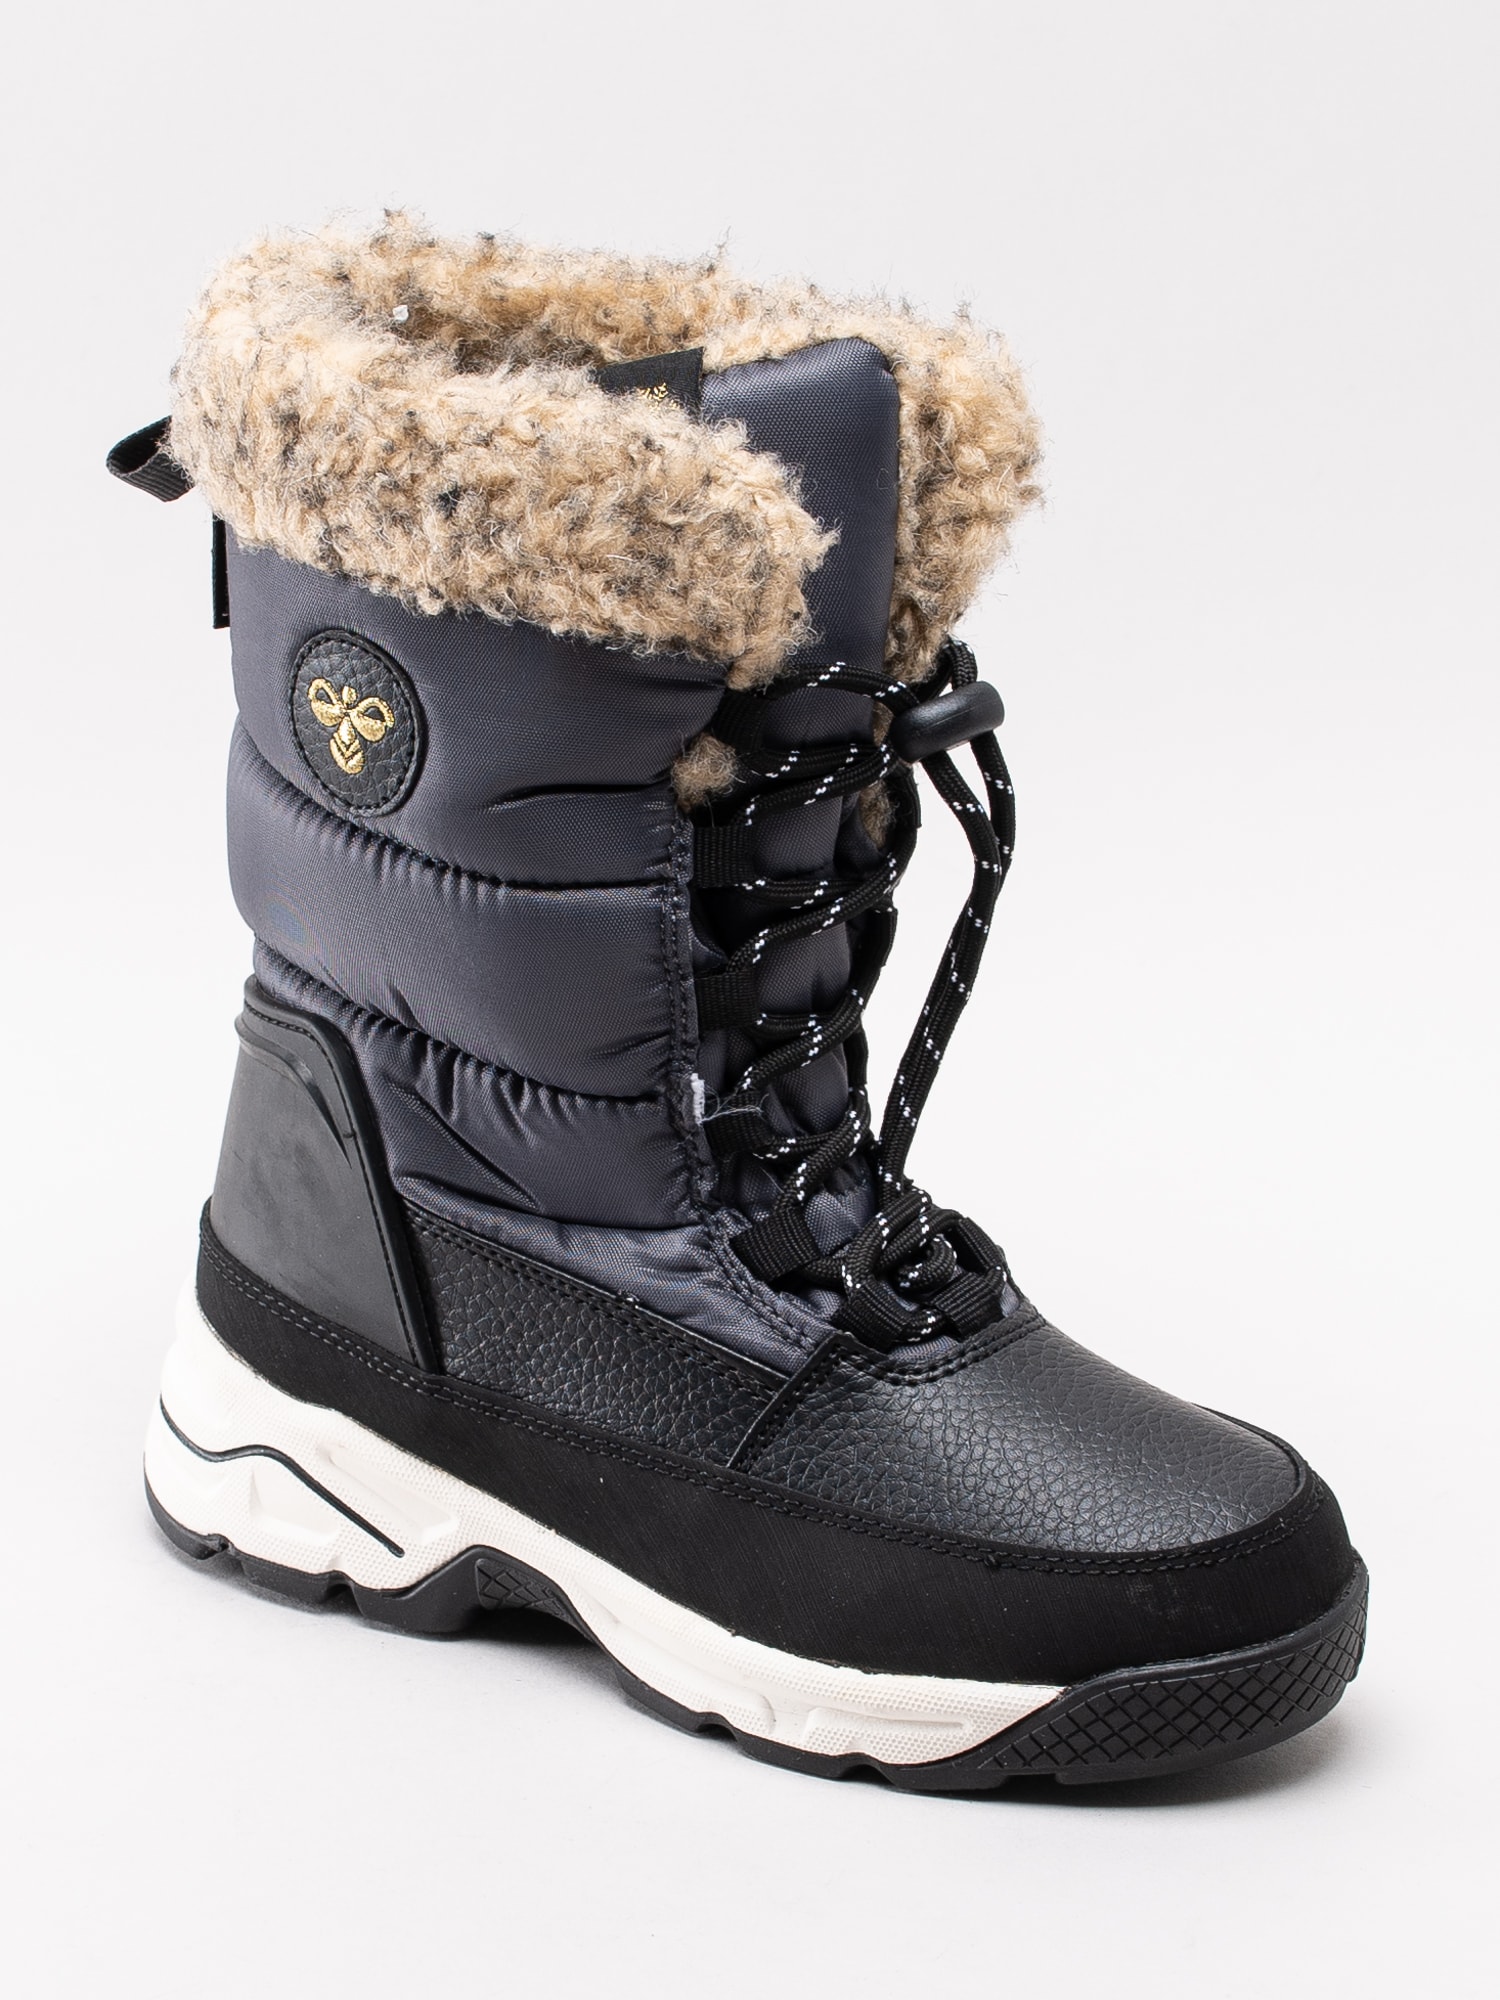 41193014 Hummel Snow Boot Junior WP 204-535-1525 mörkgrå vattentäta vinterstövlar med fuskpäls-1